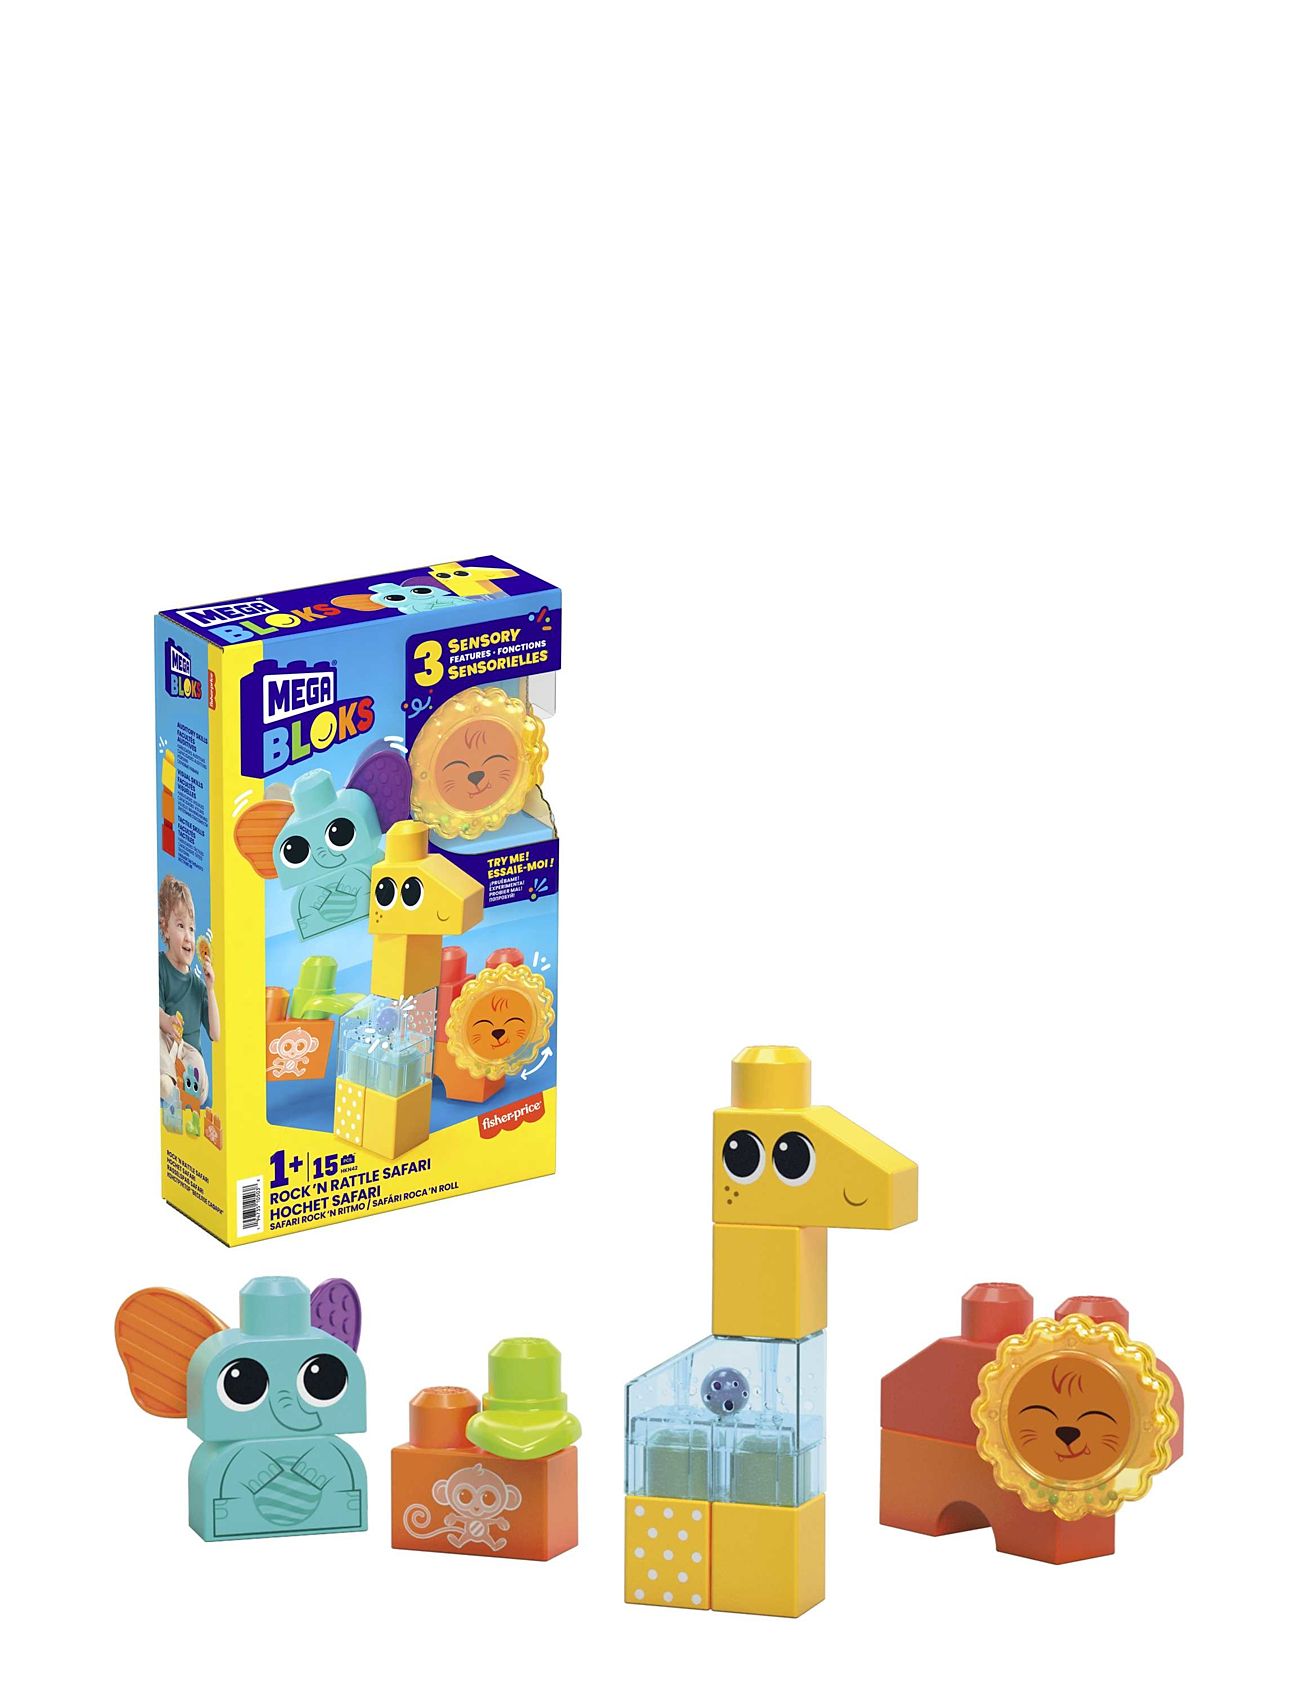 Bloks Rock 'N Rattle Safari Toys Baby Toys Educational Toys Stackable Blocks Multi/patterned MEGA Bloks